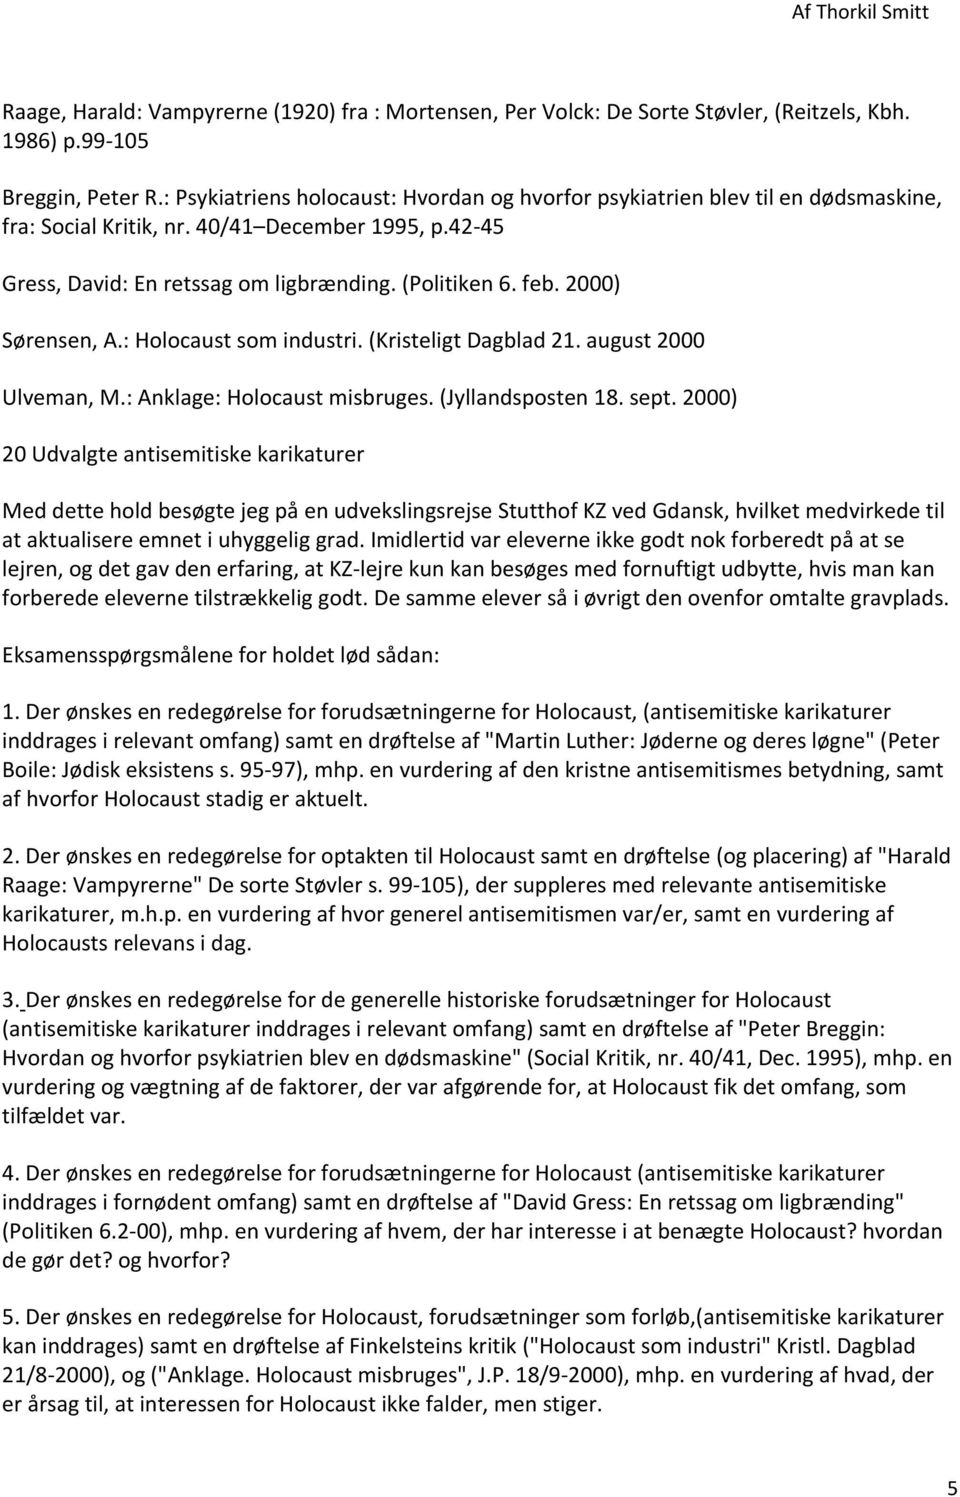 Holocaust. Af Thorkil Smitt - PDF Gratis download